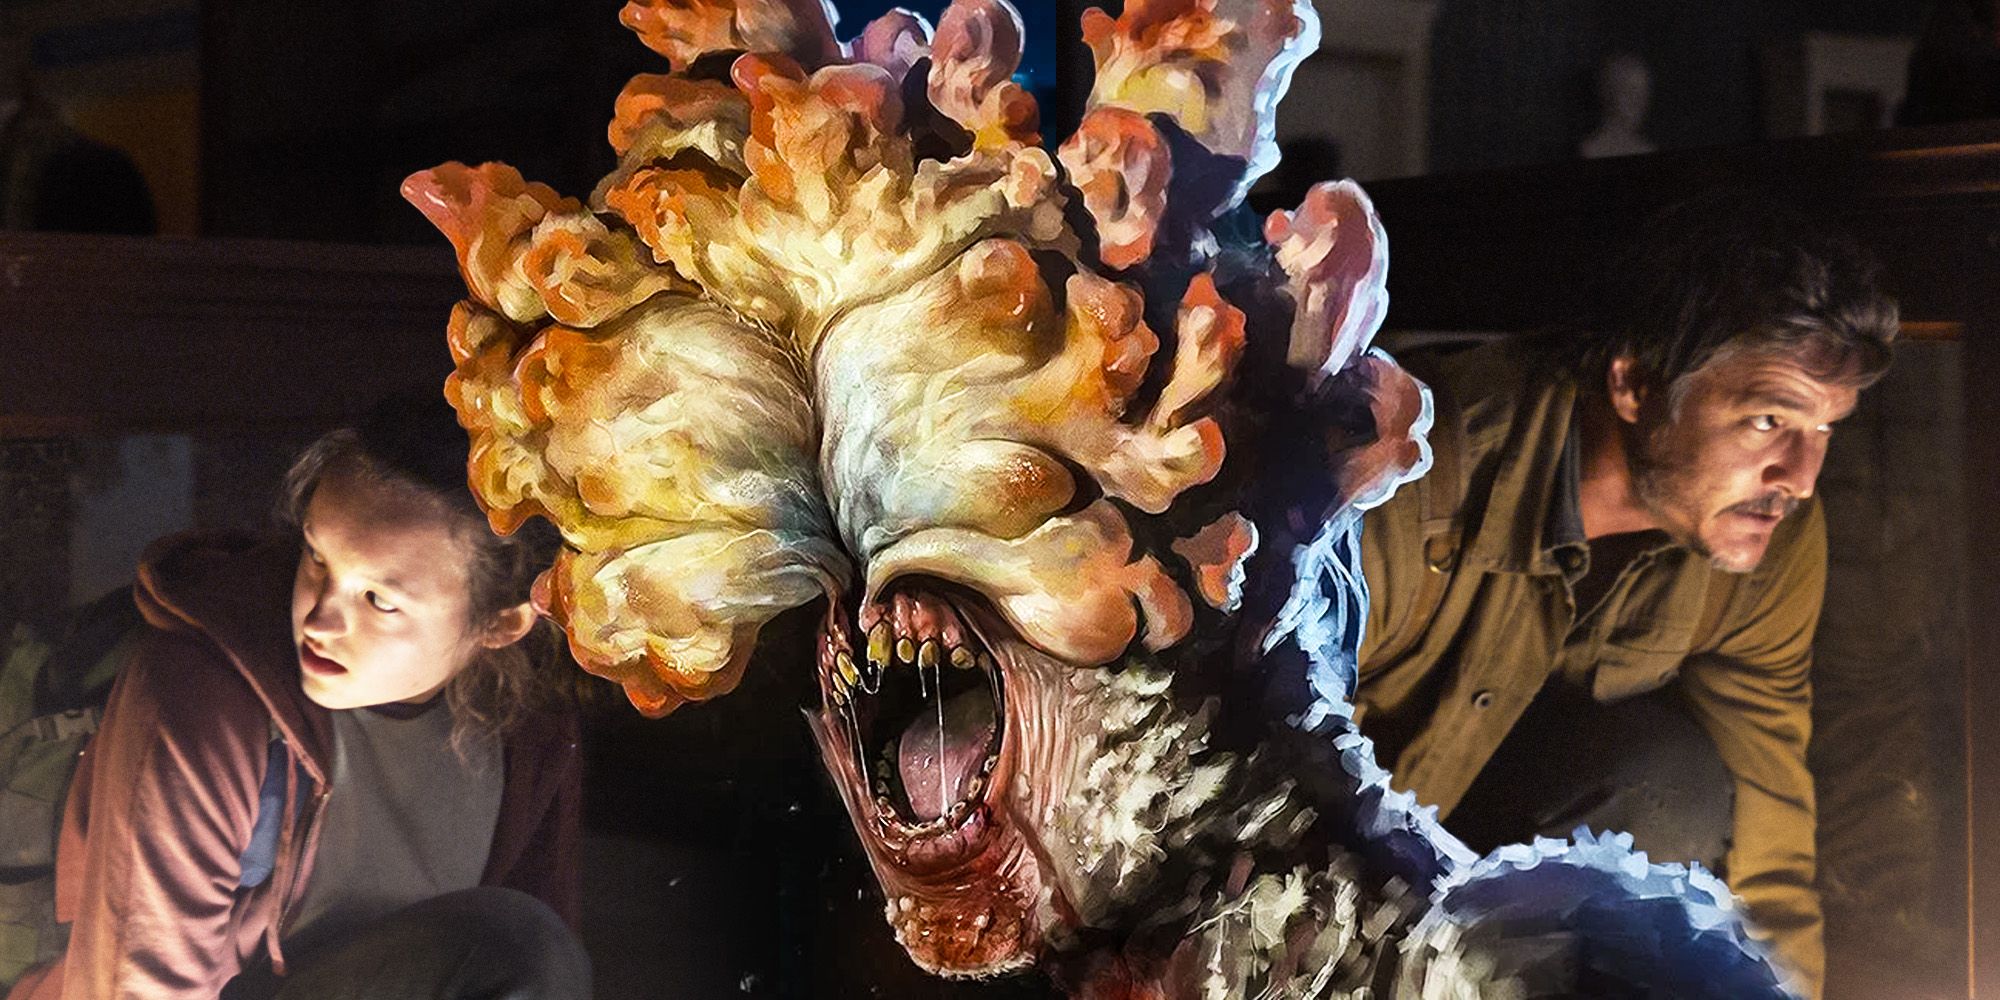 Wow, los clickers de The Last Of Us se ven increíbles en el programa de HBO